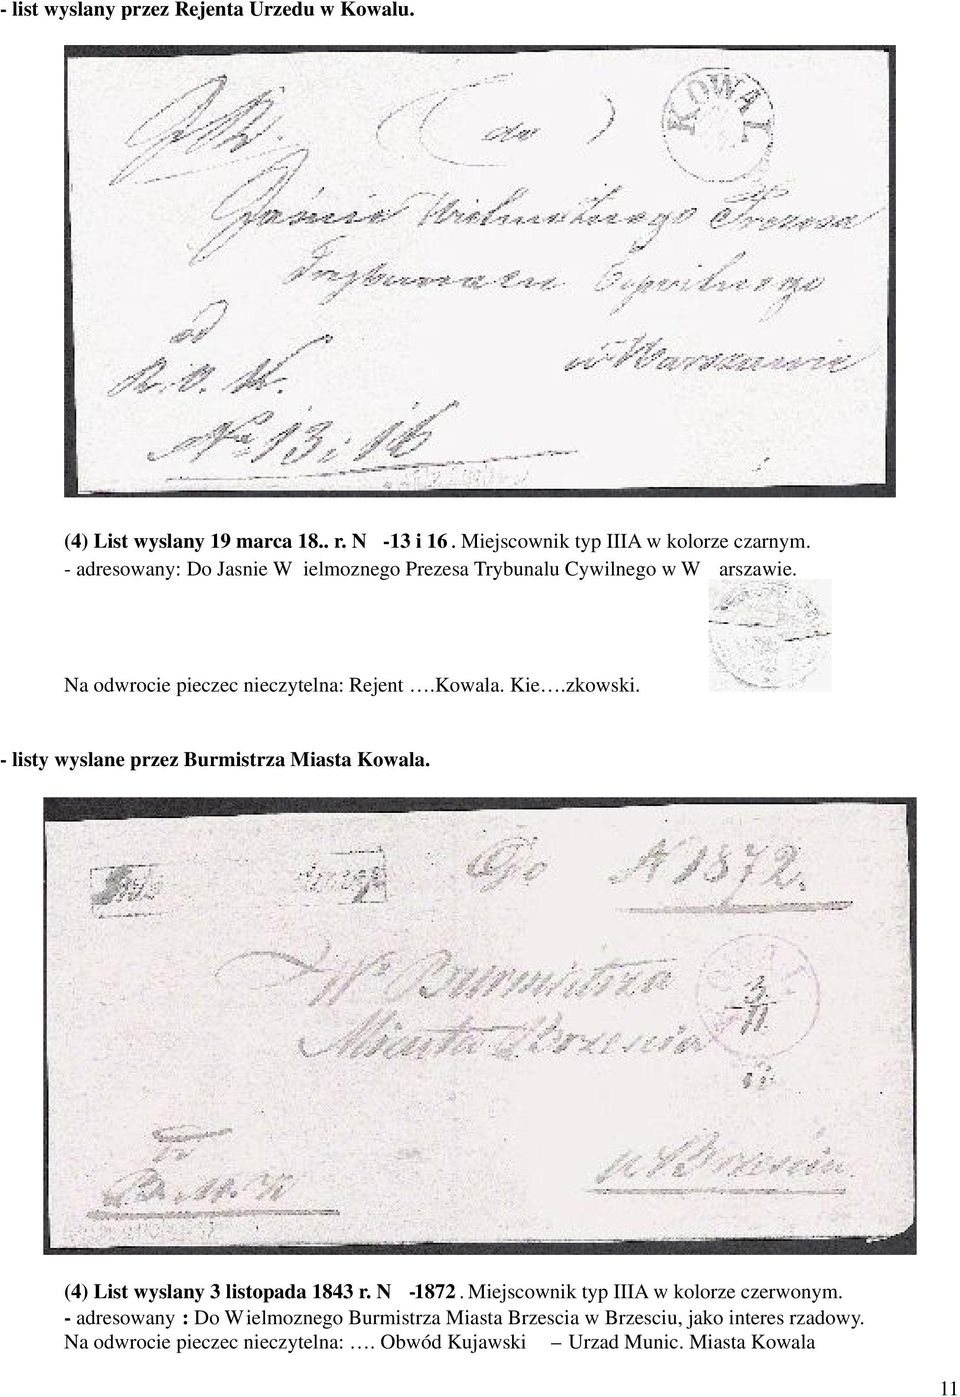 - listy wyslane przez Burmistrza Miasta Kowala. (4) List wyslany 3 listopada 1843 r. N -1872. Miejscownik typ IIIA w kolorze czerwonym.